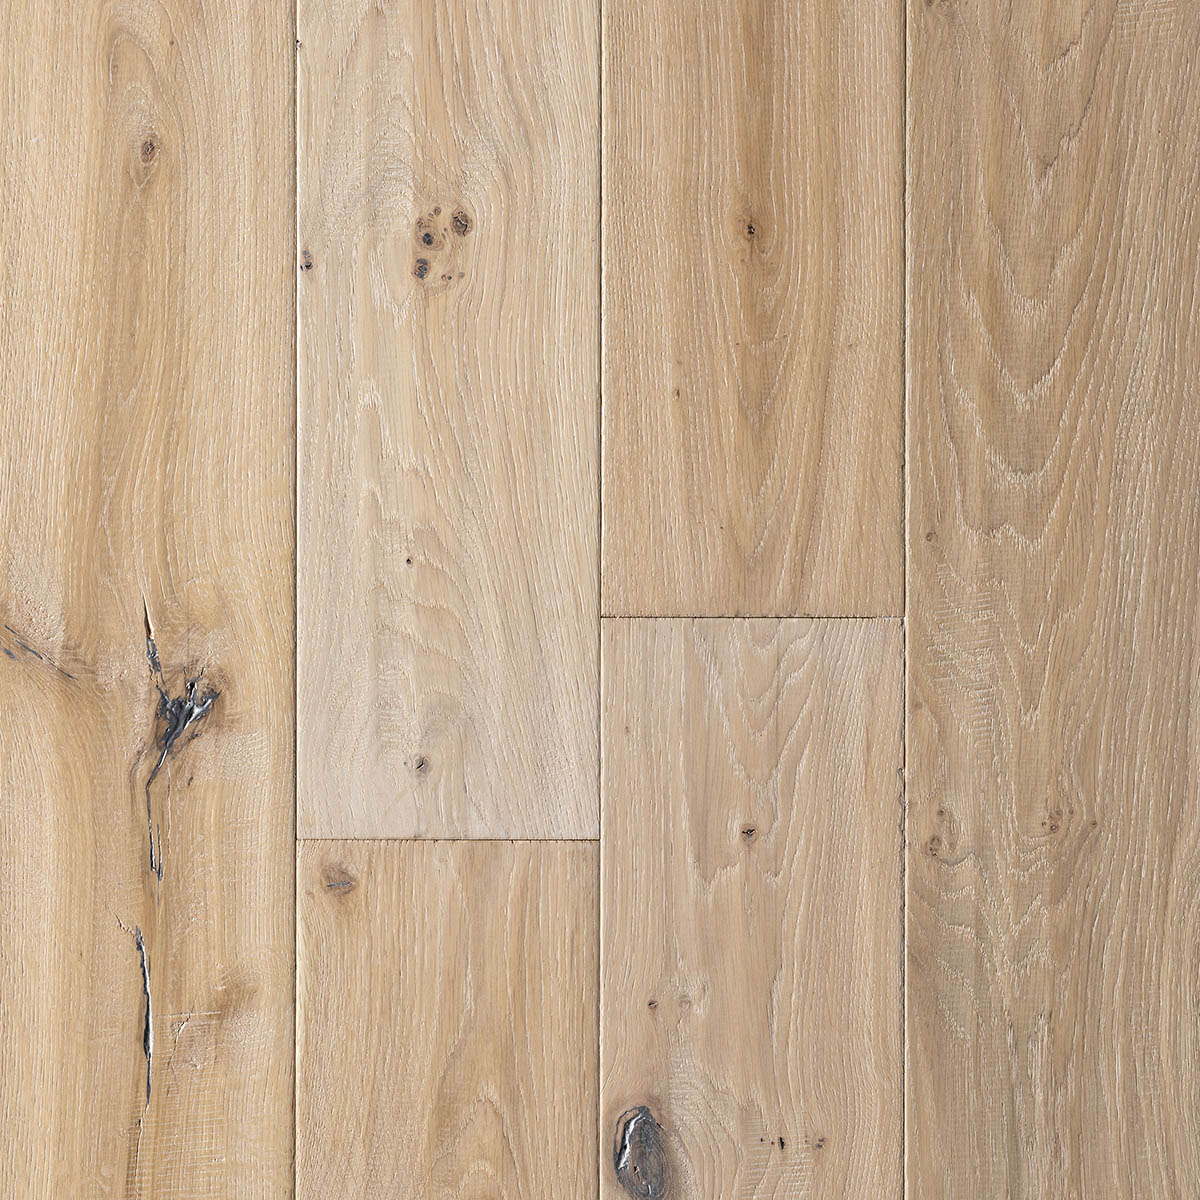 Hazelhead - Rustic Grade Distressed Engineered Oak Floor